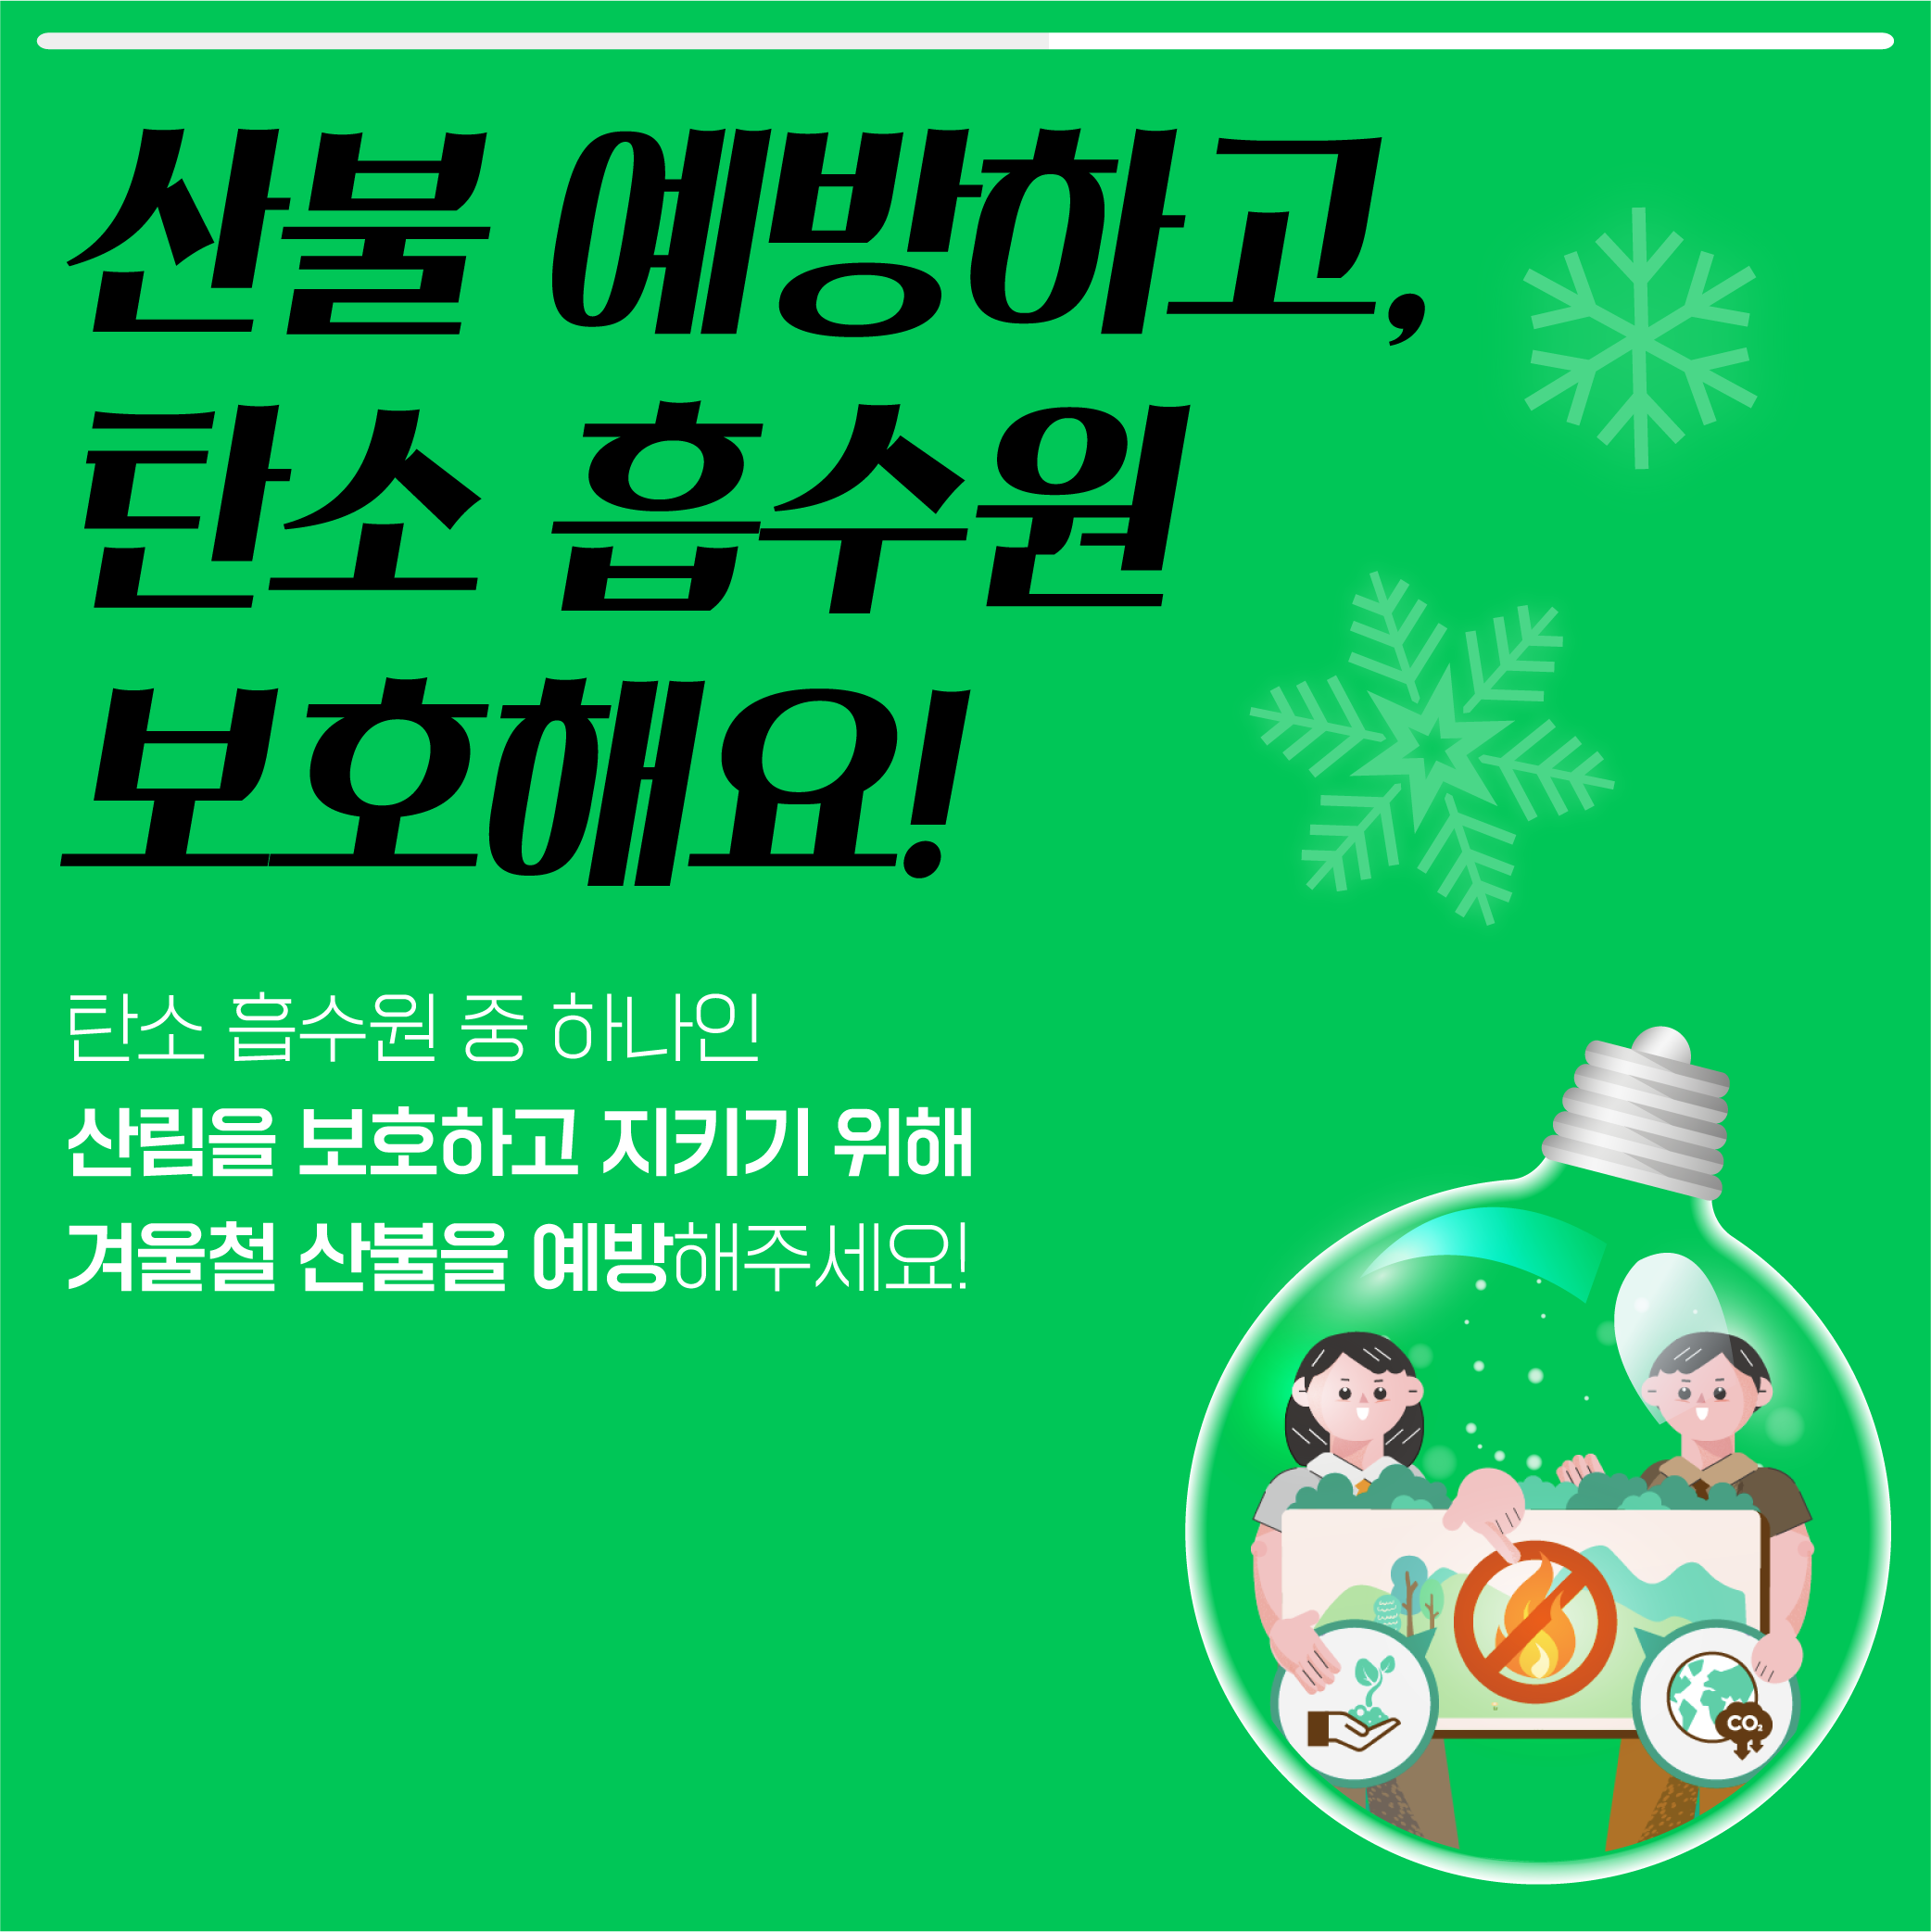 동절기 탄소중립 실천 카드뉴스_6.png